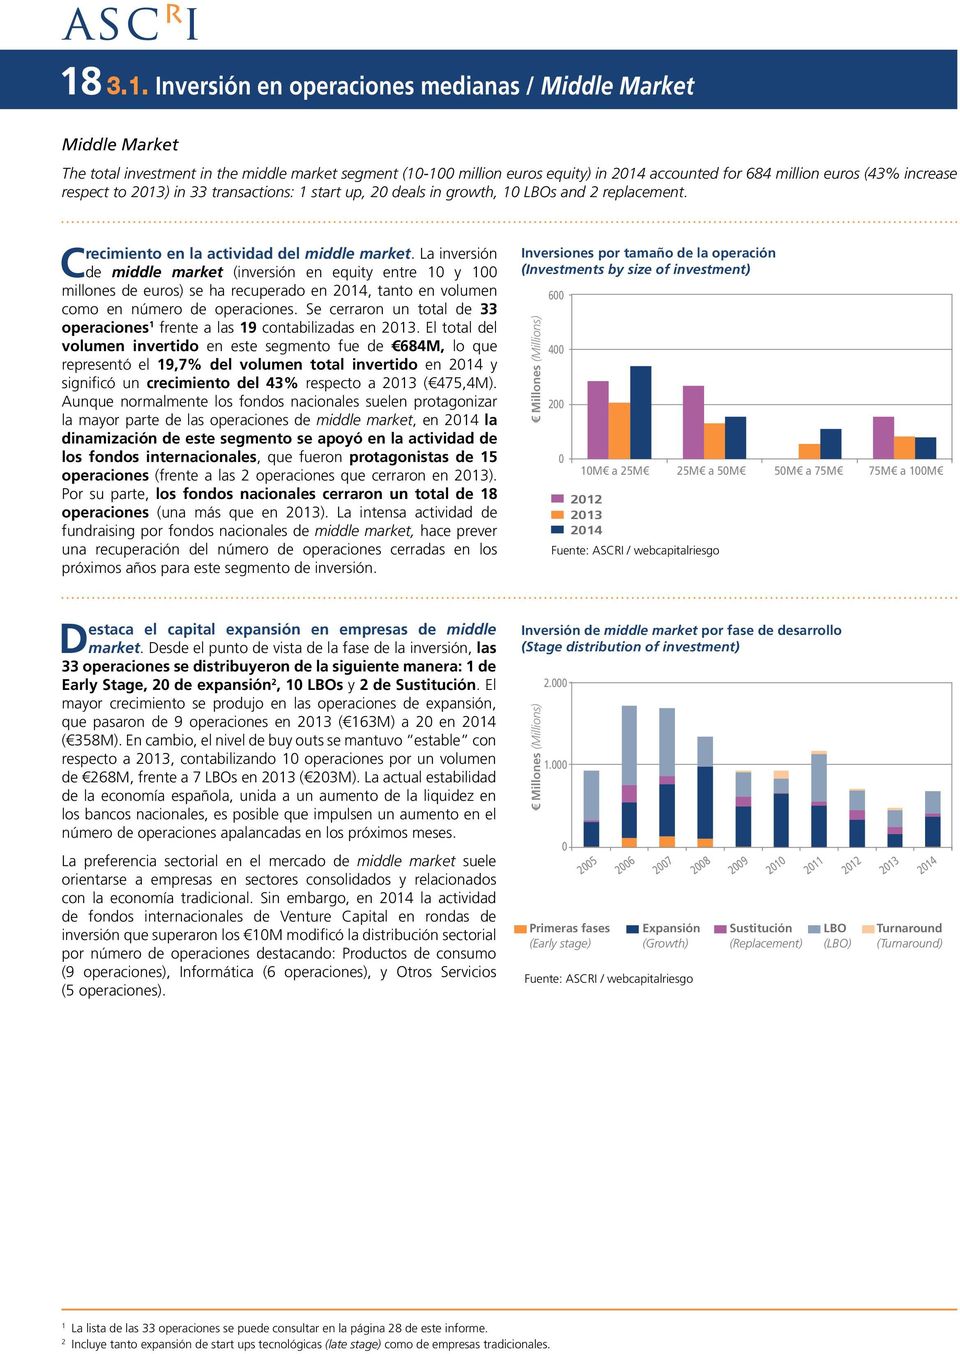 La inversión de middle market (inversión en equity entre 10 y 100 millones de euros) se ha recuperado en 2014, tanto en volumen como en número de operaciones.